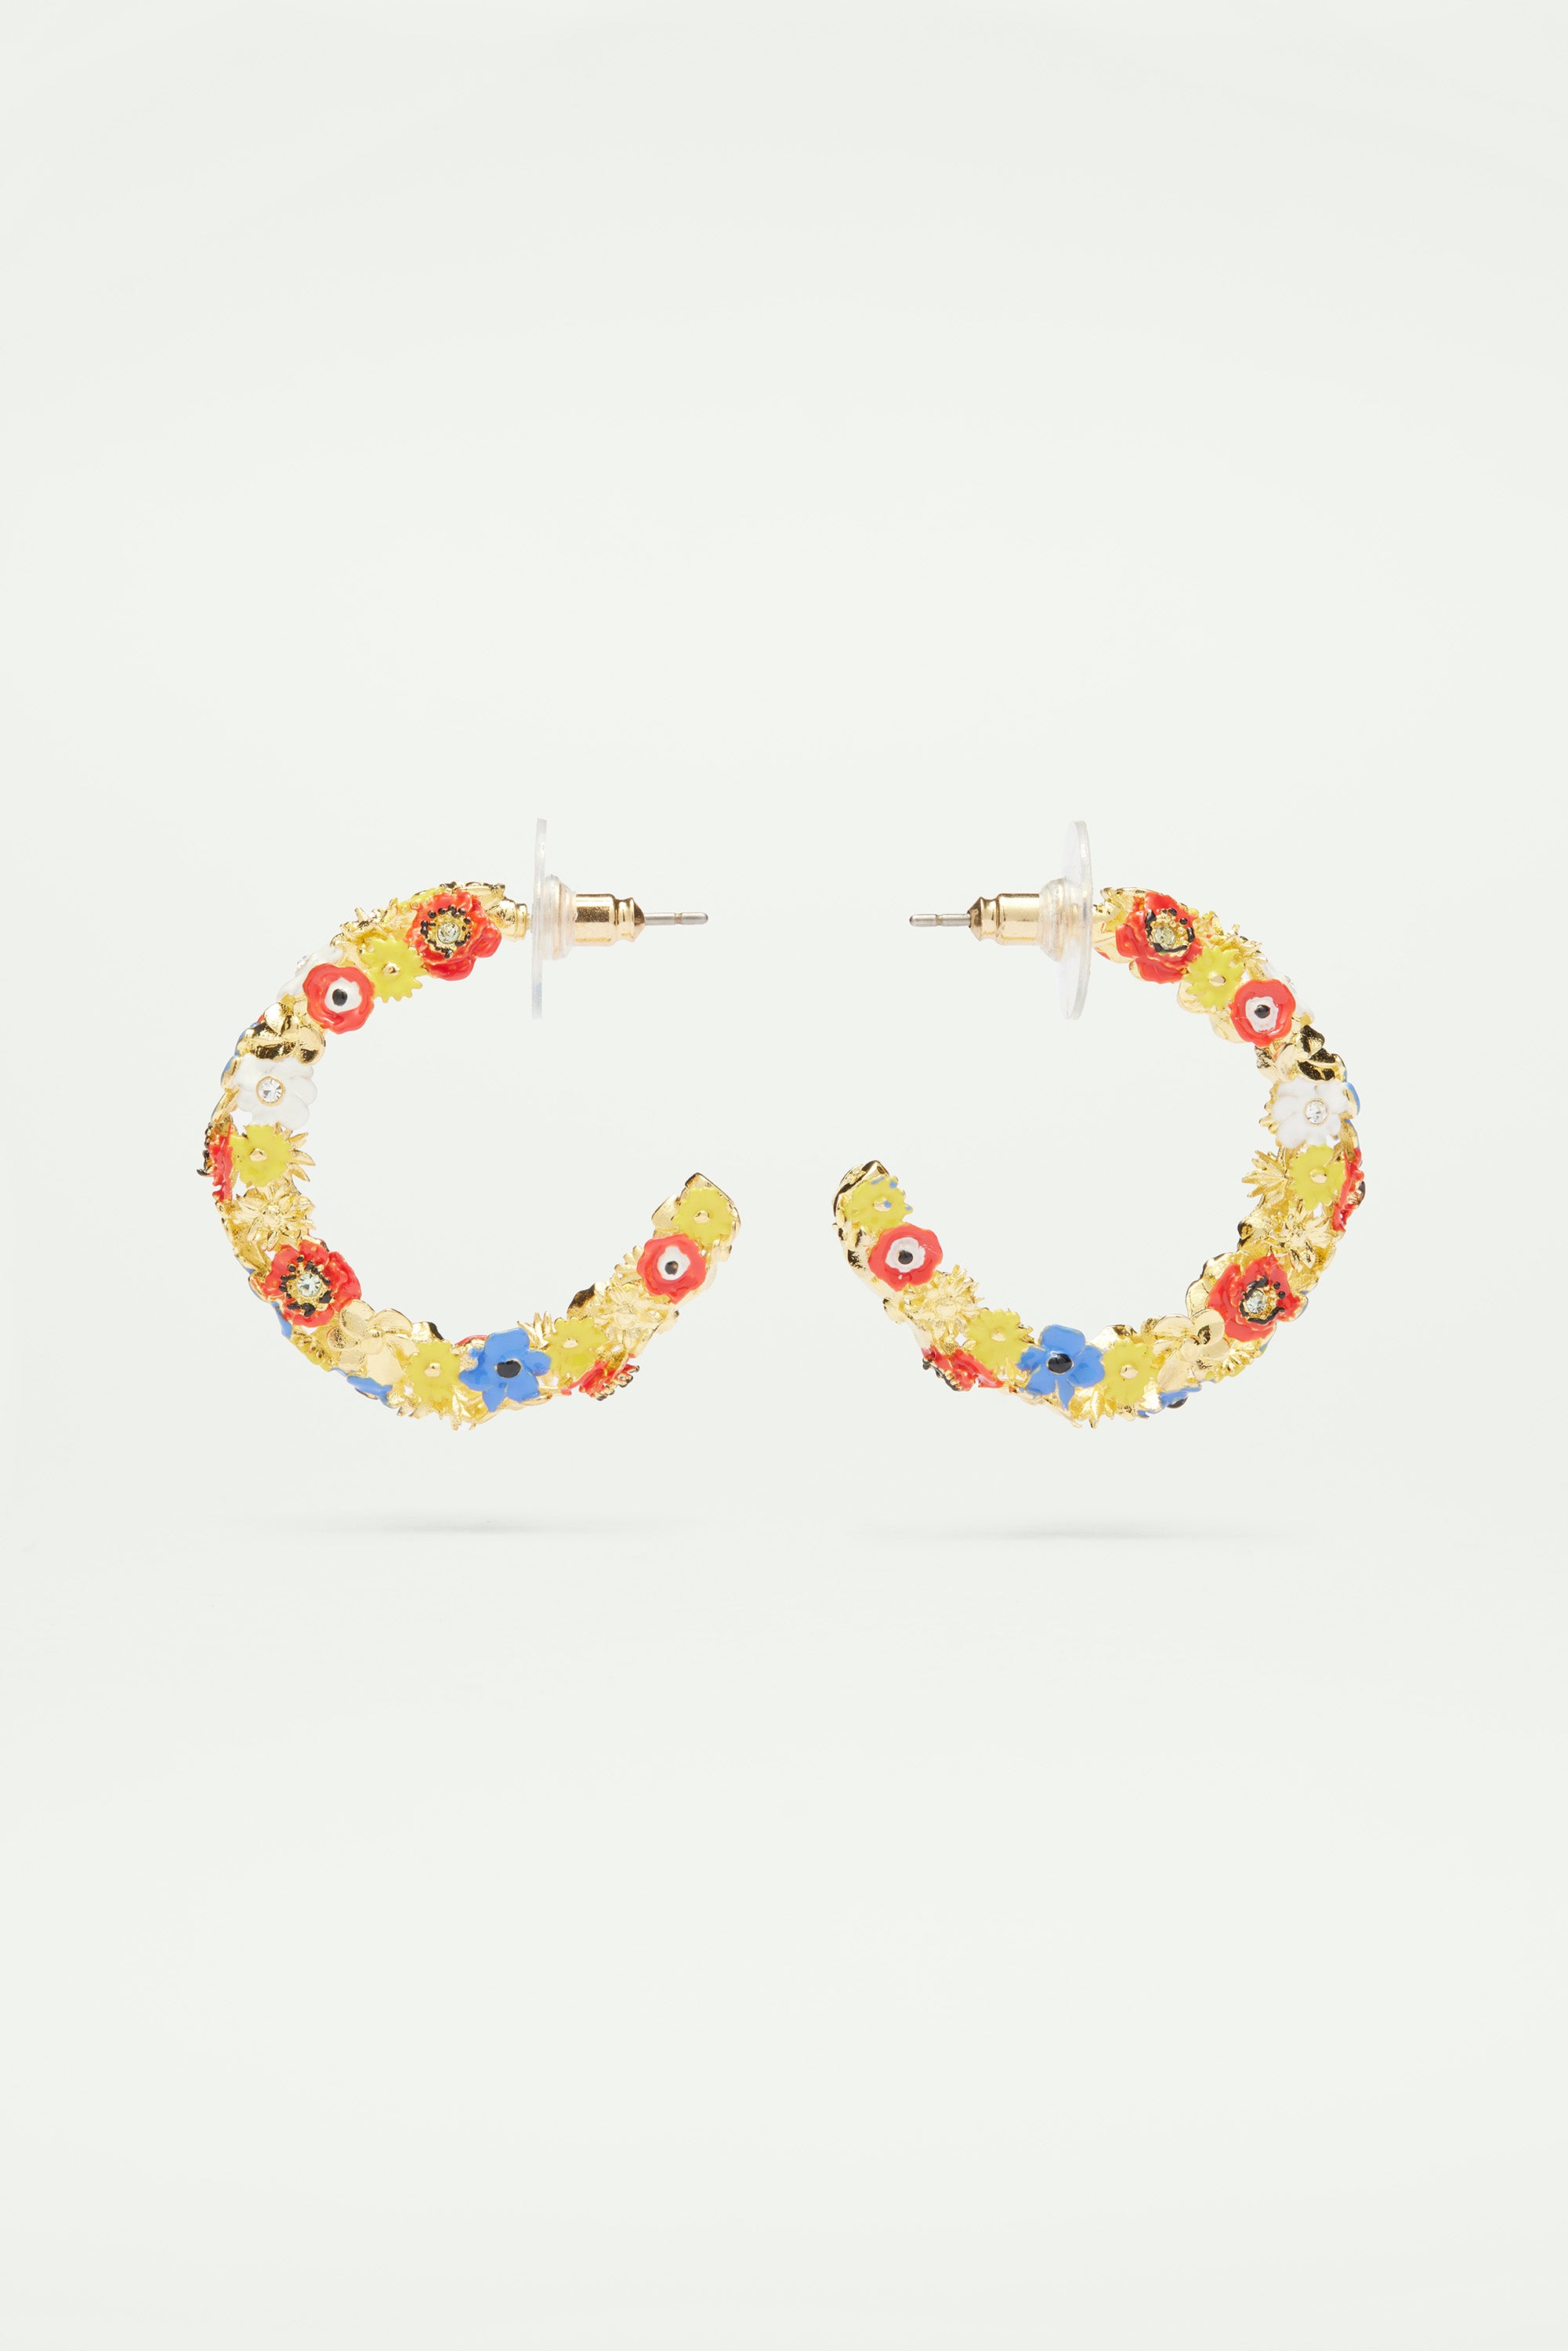 Wildflower hoop earrings